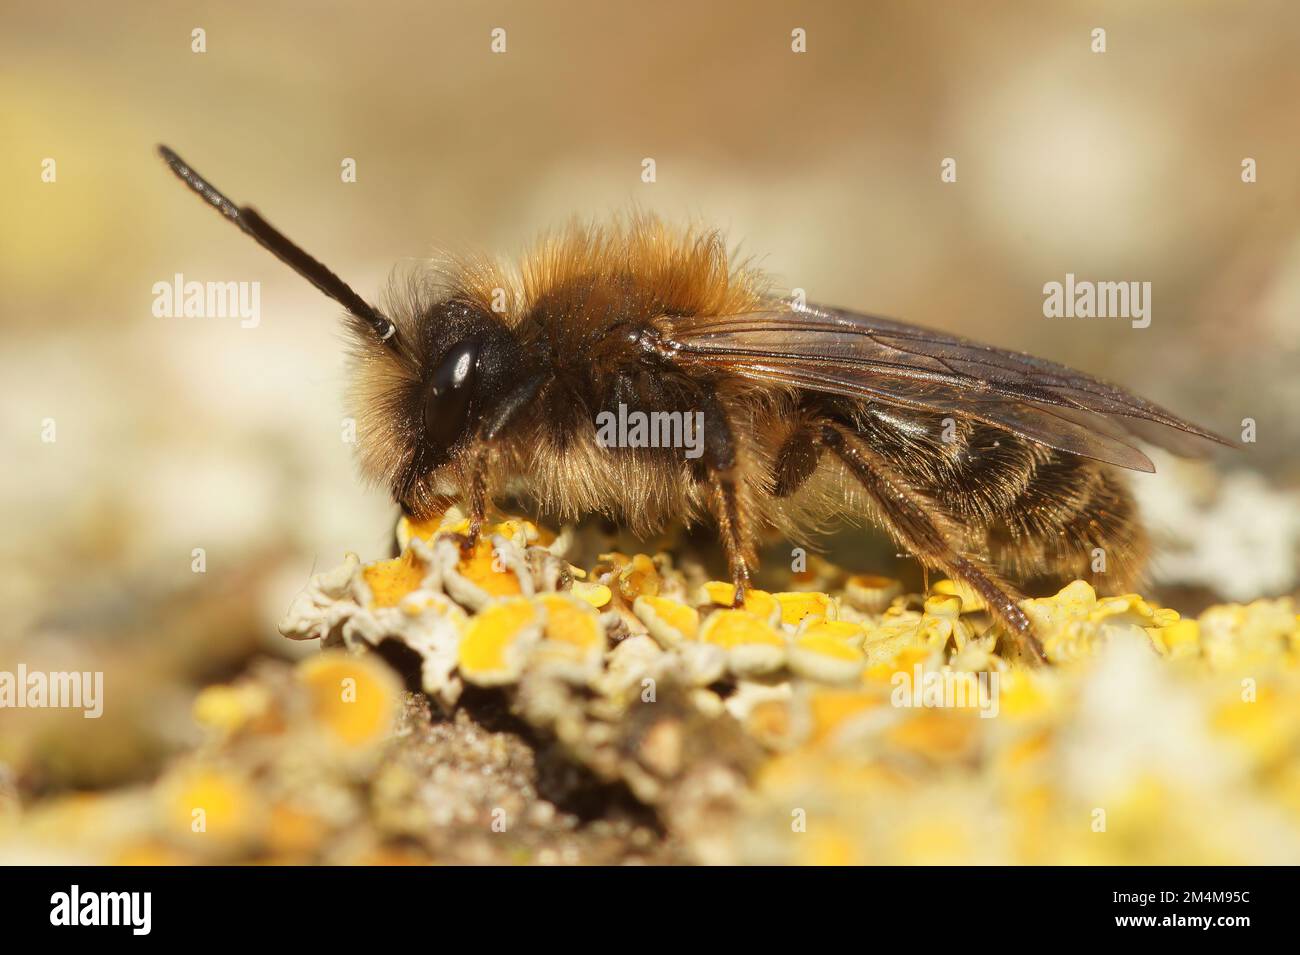 Detaillierte Nahaufnahme eines Mannes von Clarkes Bergbaubiene, Andrena Clarkella, der auf Holz sitzt Stockfoto